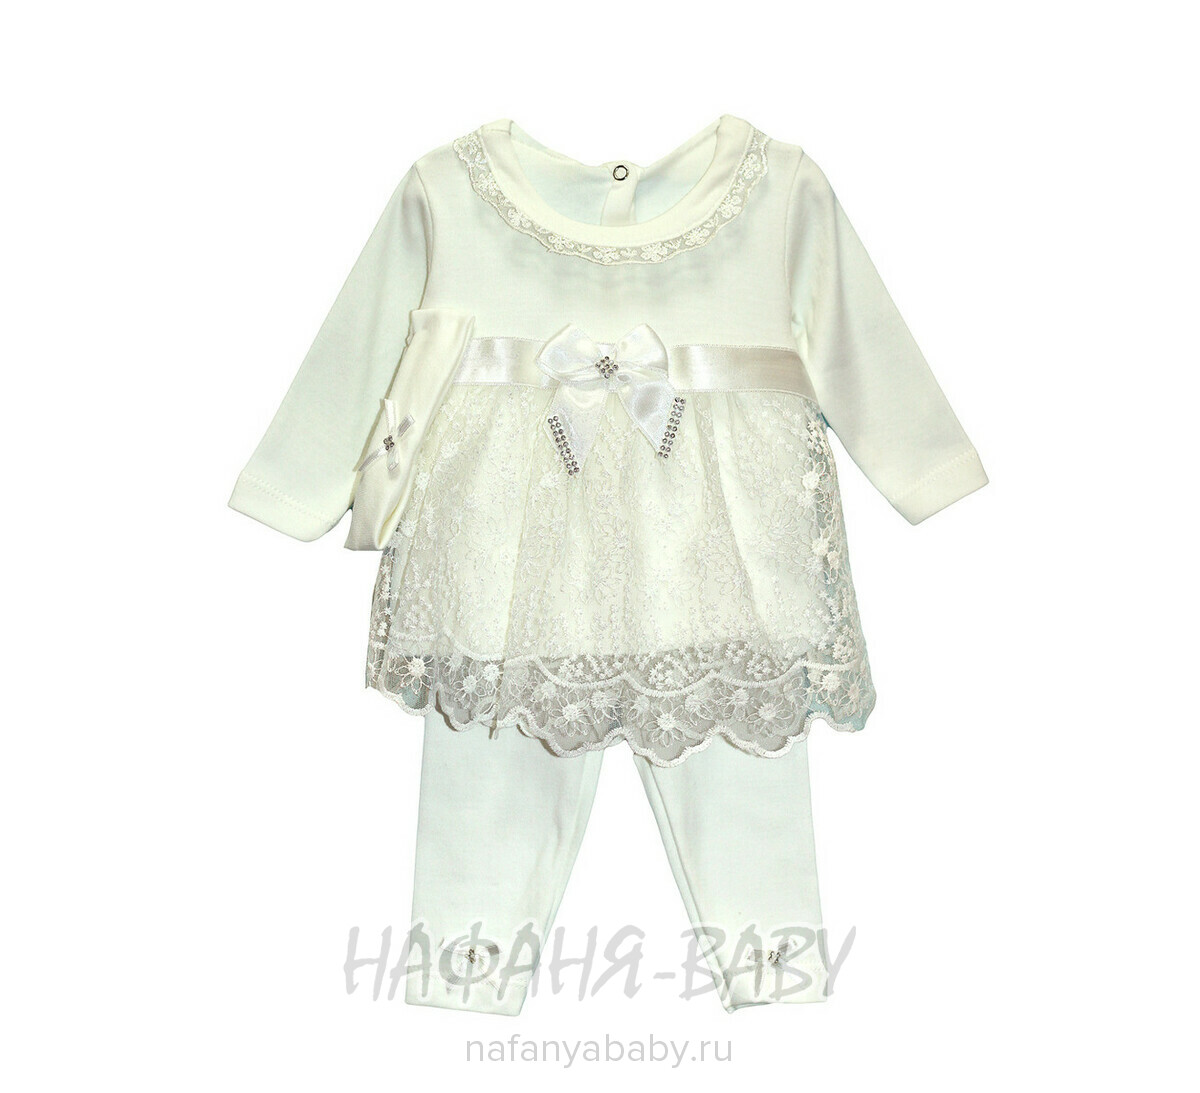 Детский костюм для новорожденных FINDIK, купить в интернет магазине Нафаня. арт: 61009.